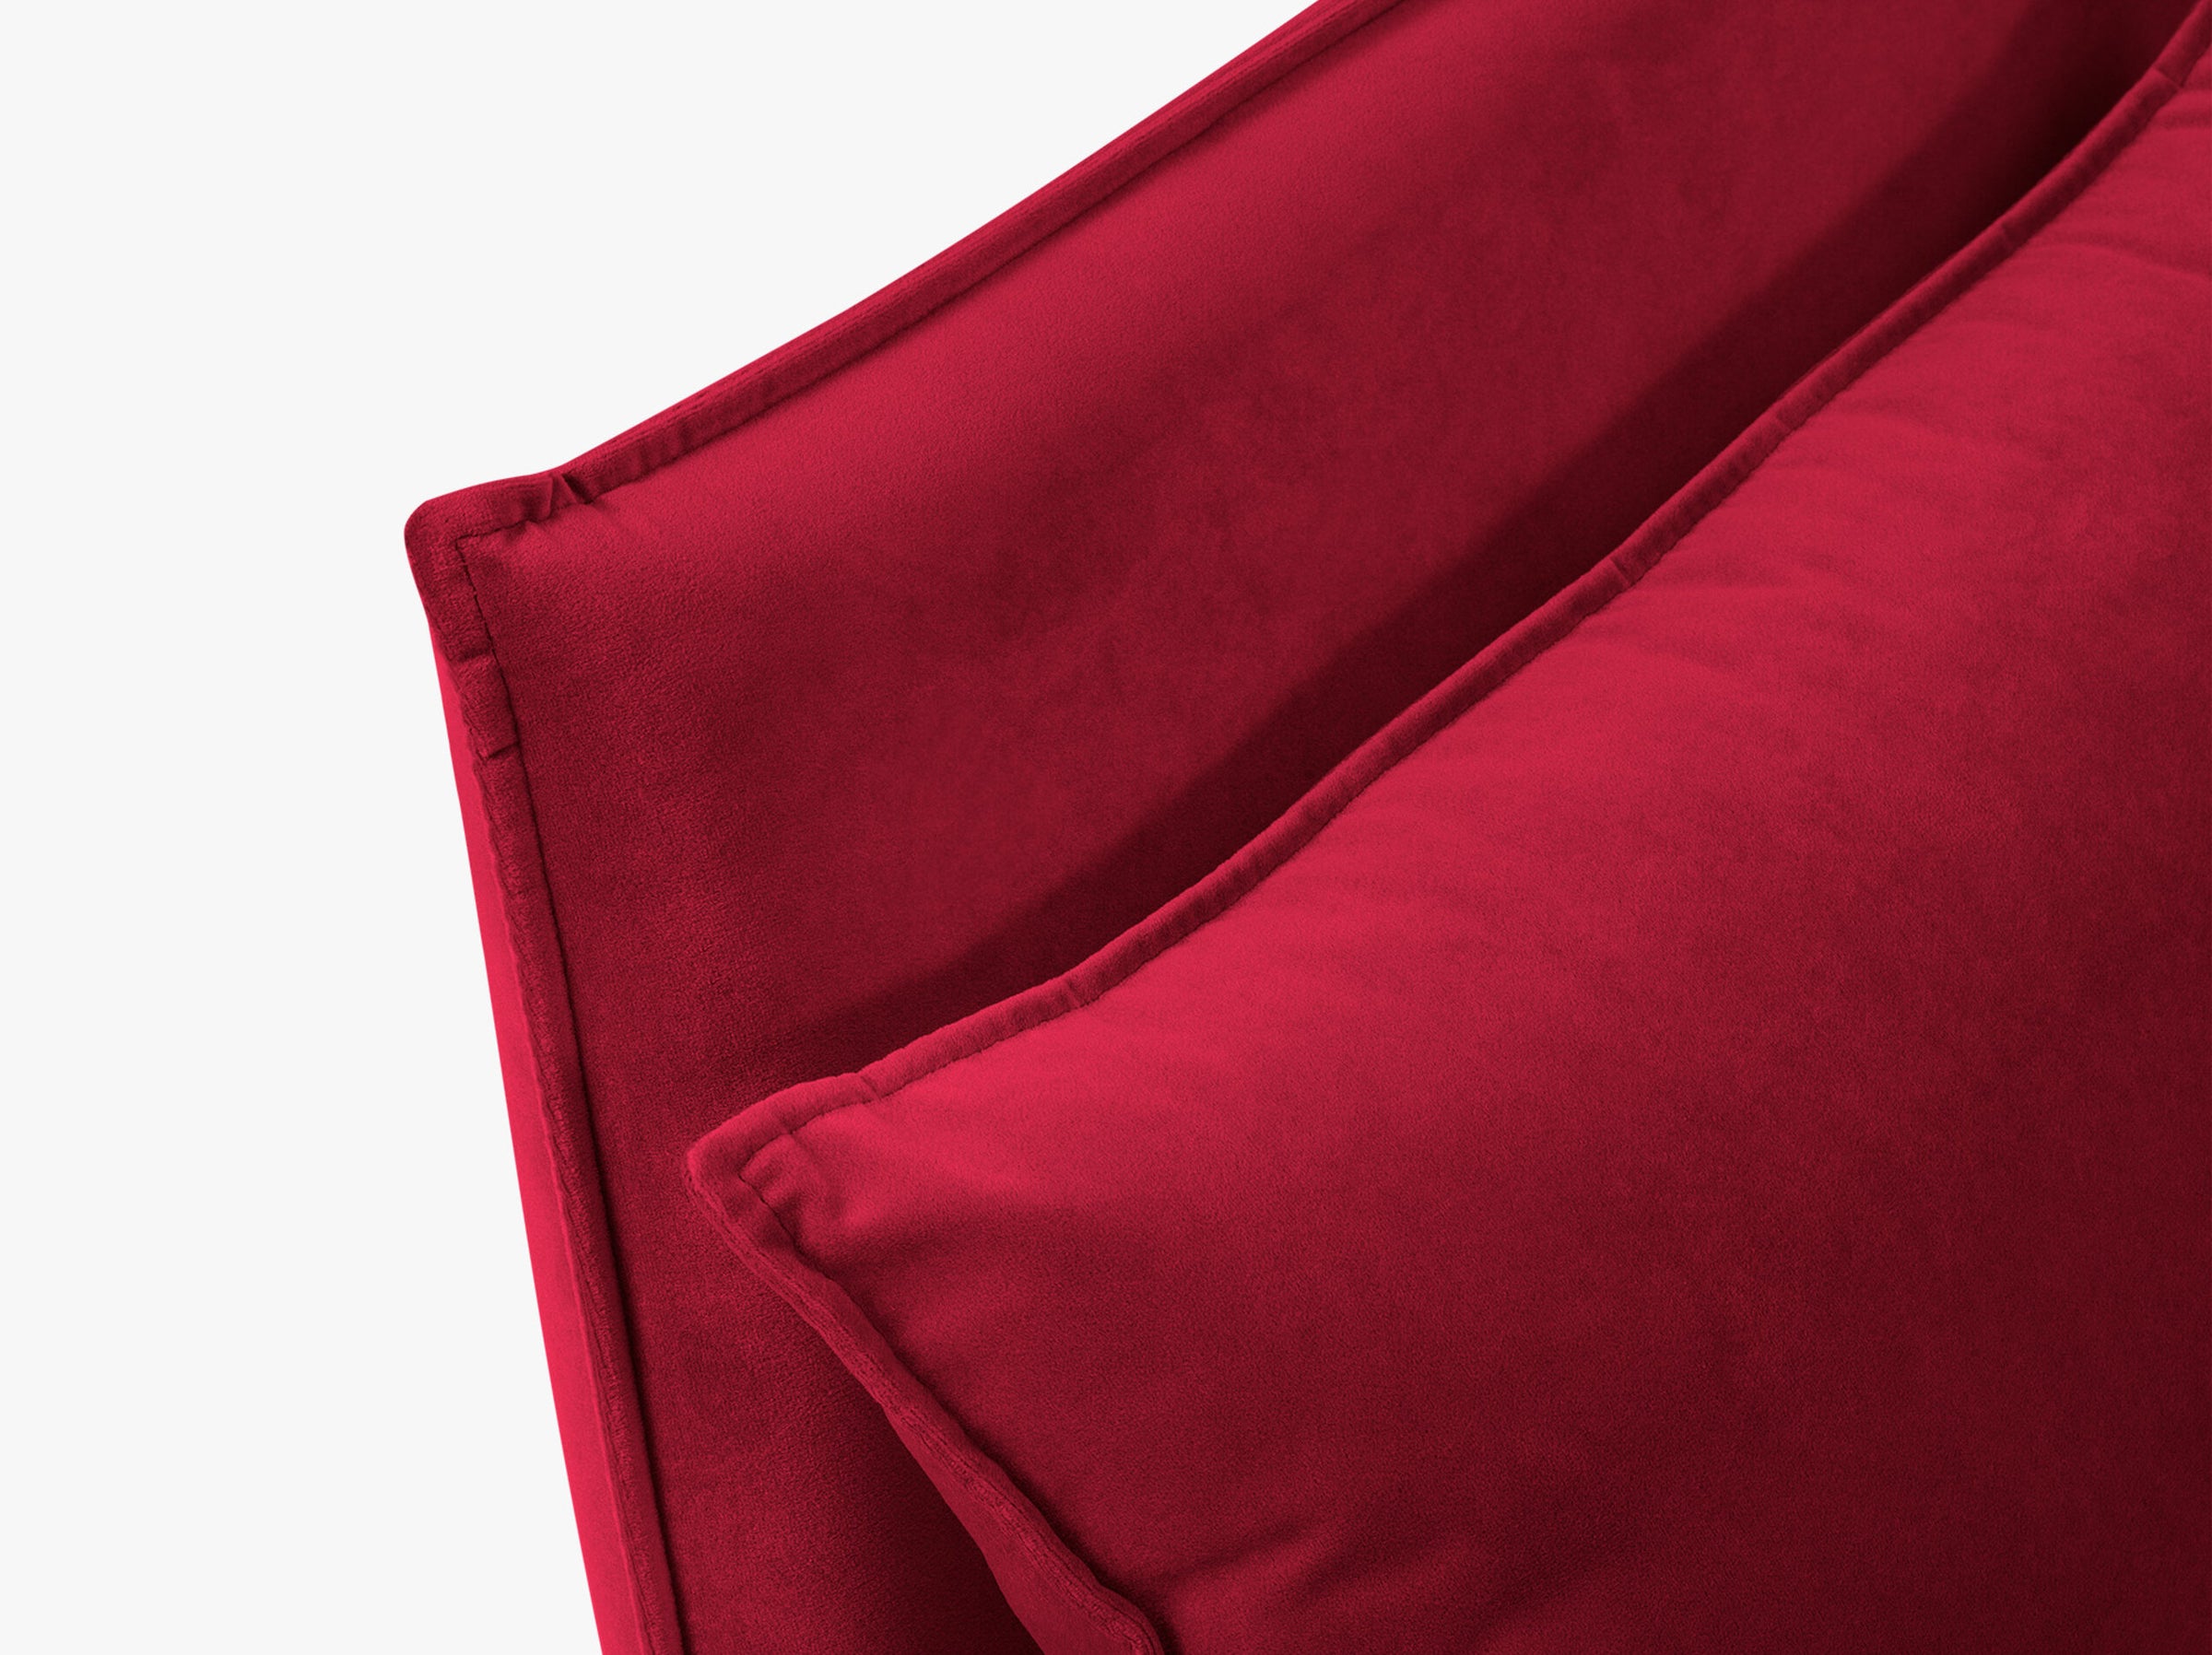 Agate sofas velvet red